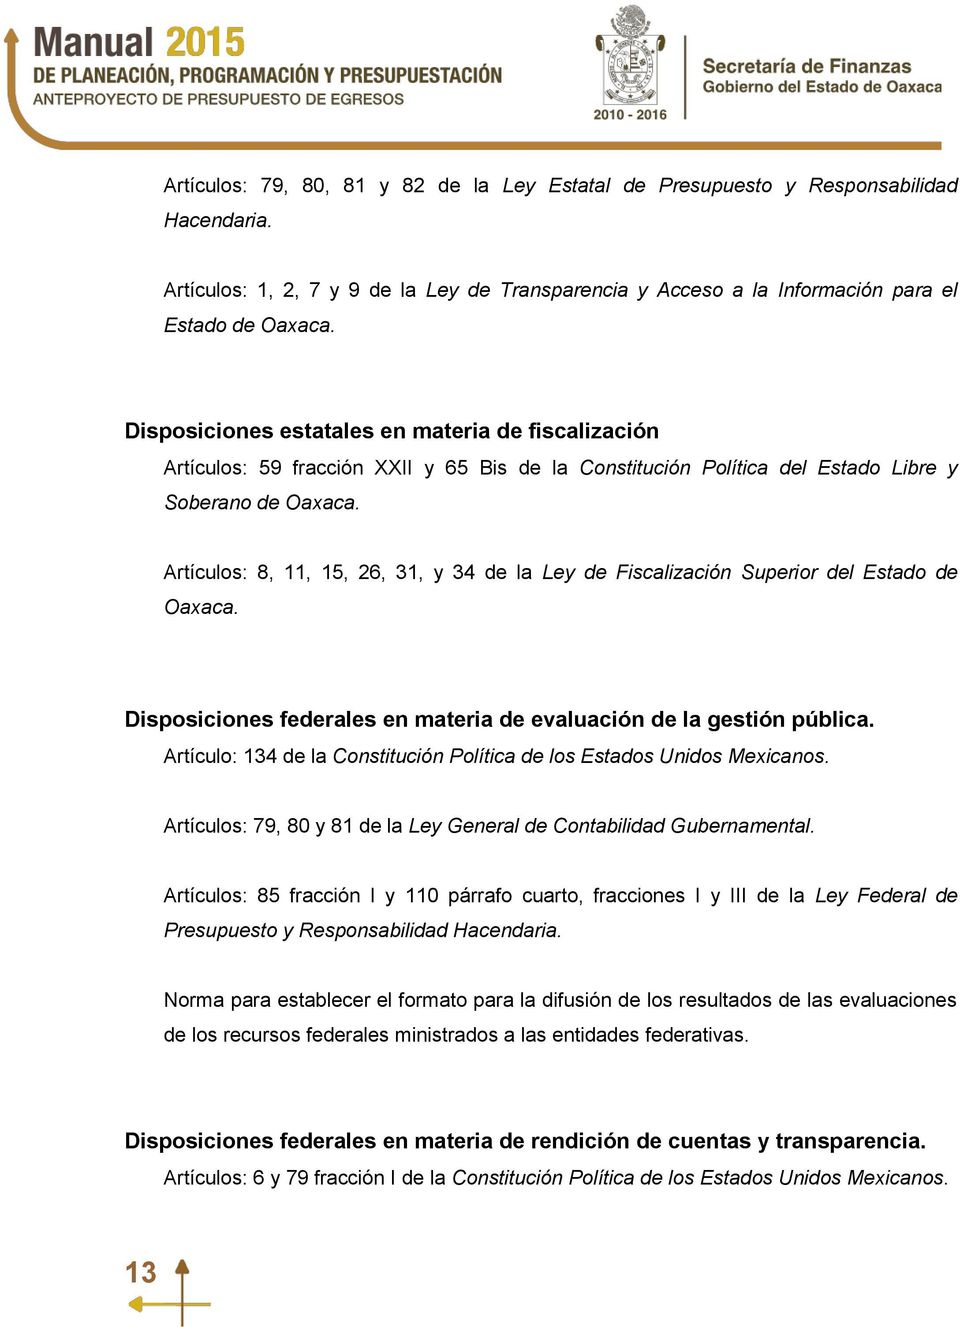 Artículos: 8, 11, 15, 26, 31, y 34 de la Ley de Fiscalización Superior del Estado de Oaxaca. Disposiciones federales en materia de evaluación de la gestión pública.